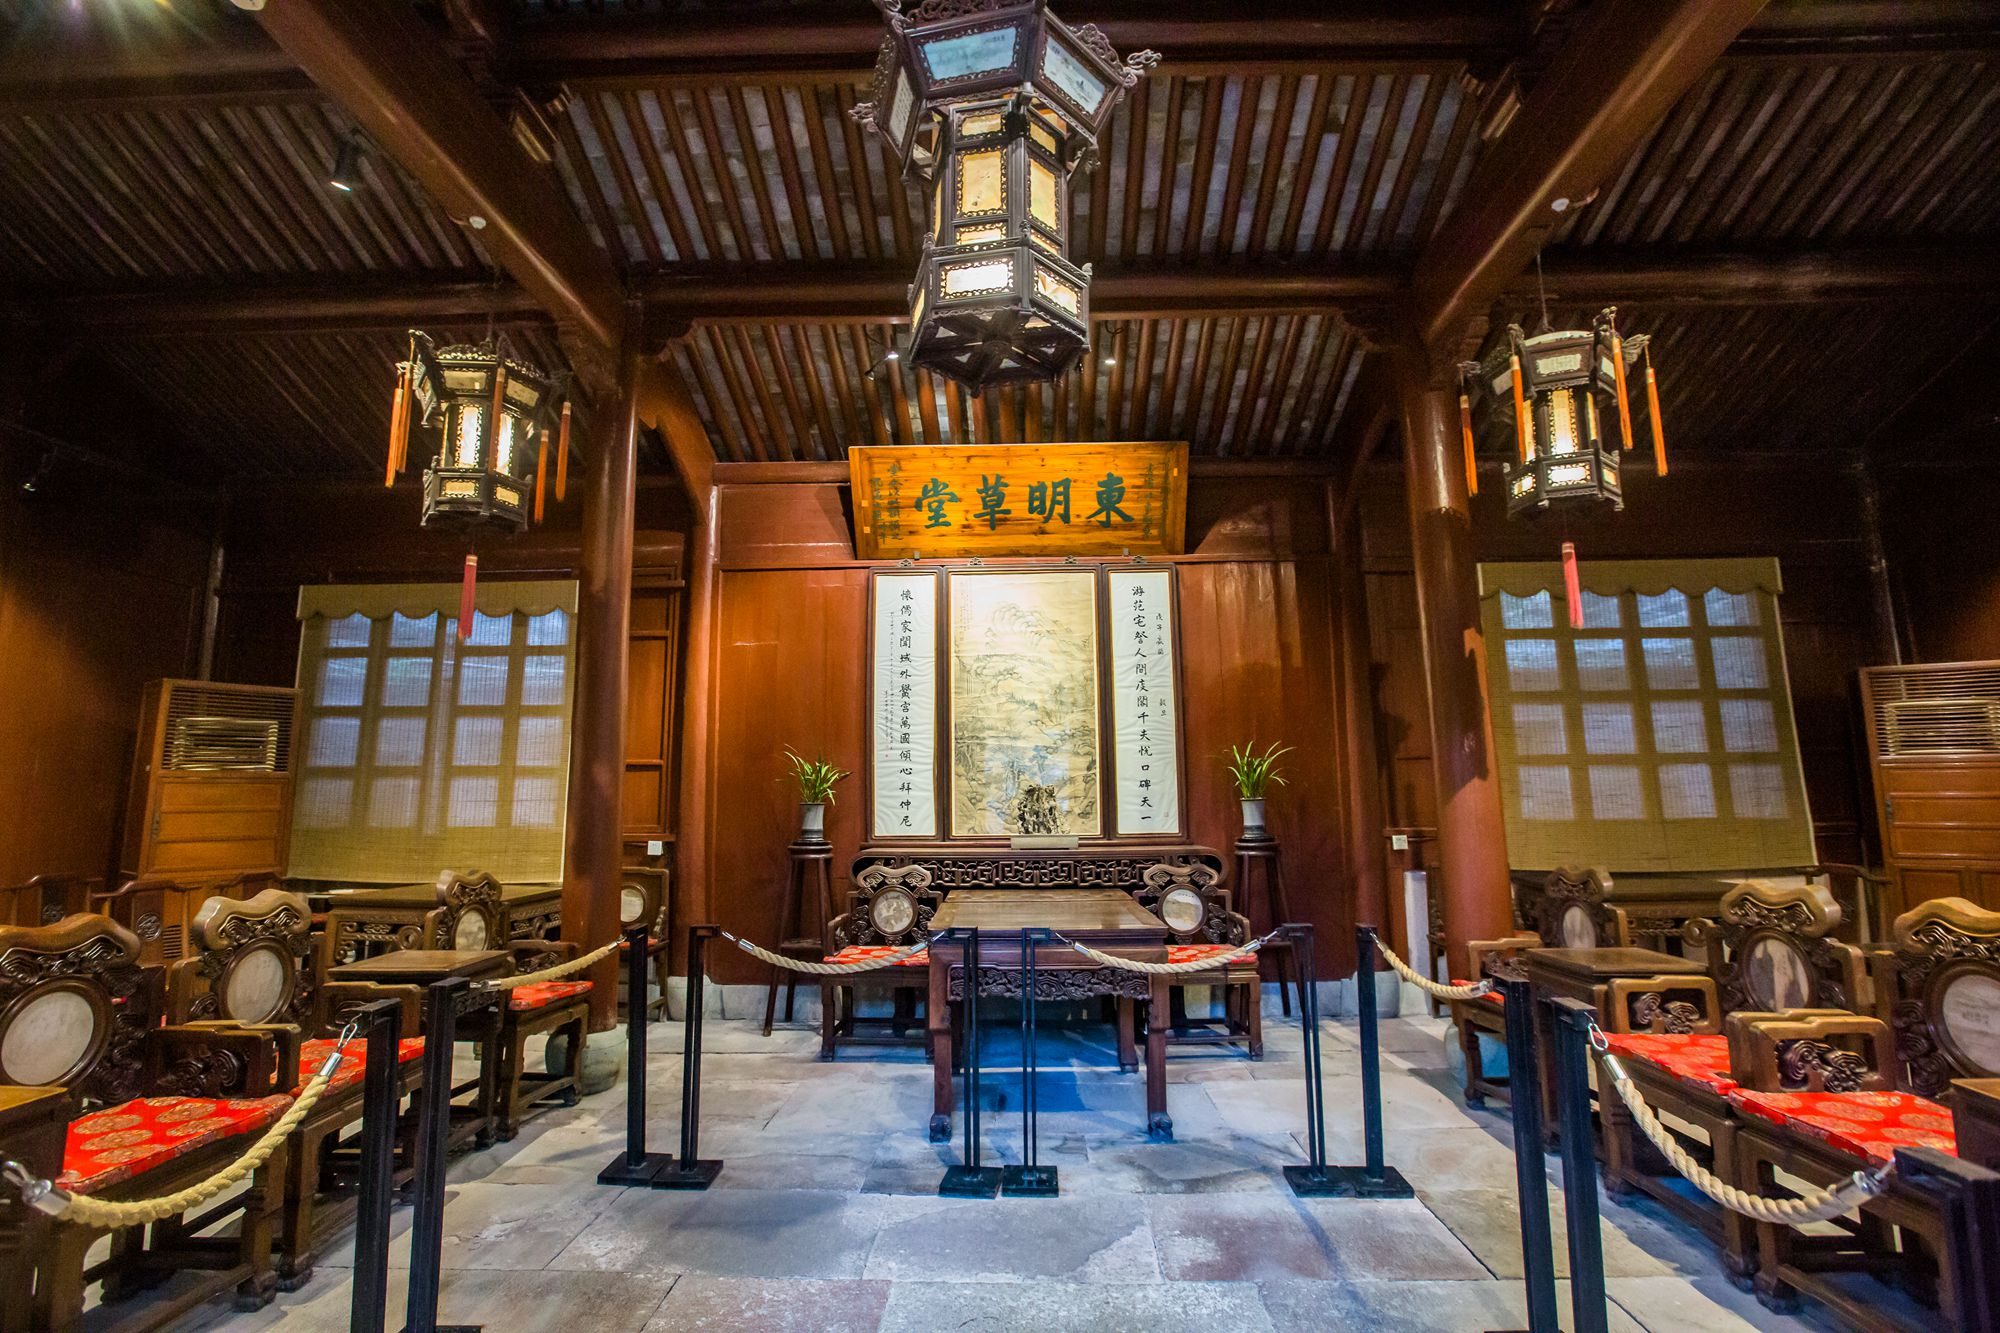 宁波天一阁,中国现存最早的私家藏书楼,历经400多年的传奇